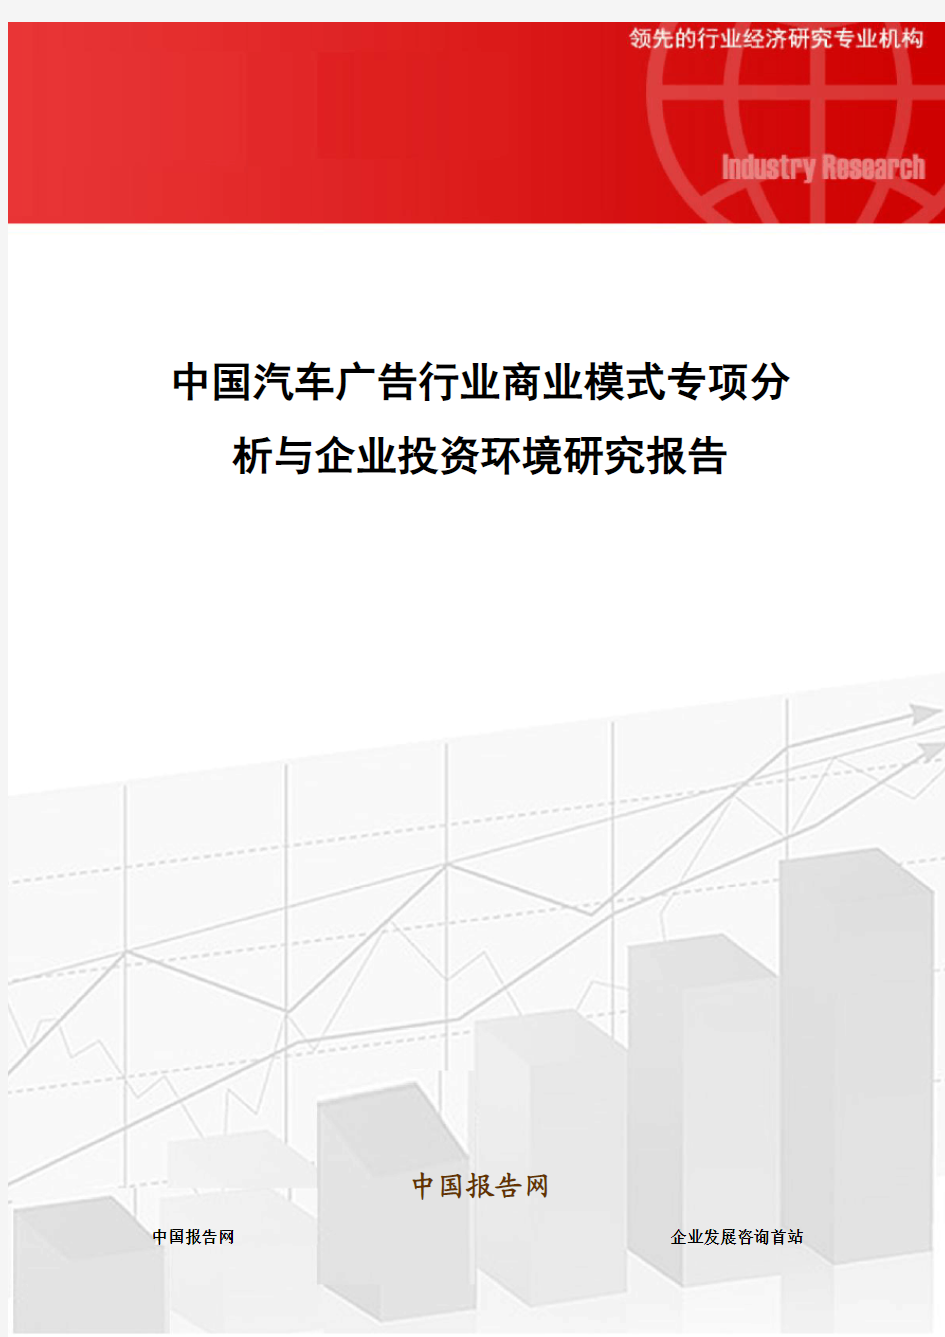 中国汽车广告行业商业模式专项分析与企业投资环境研究报告